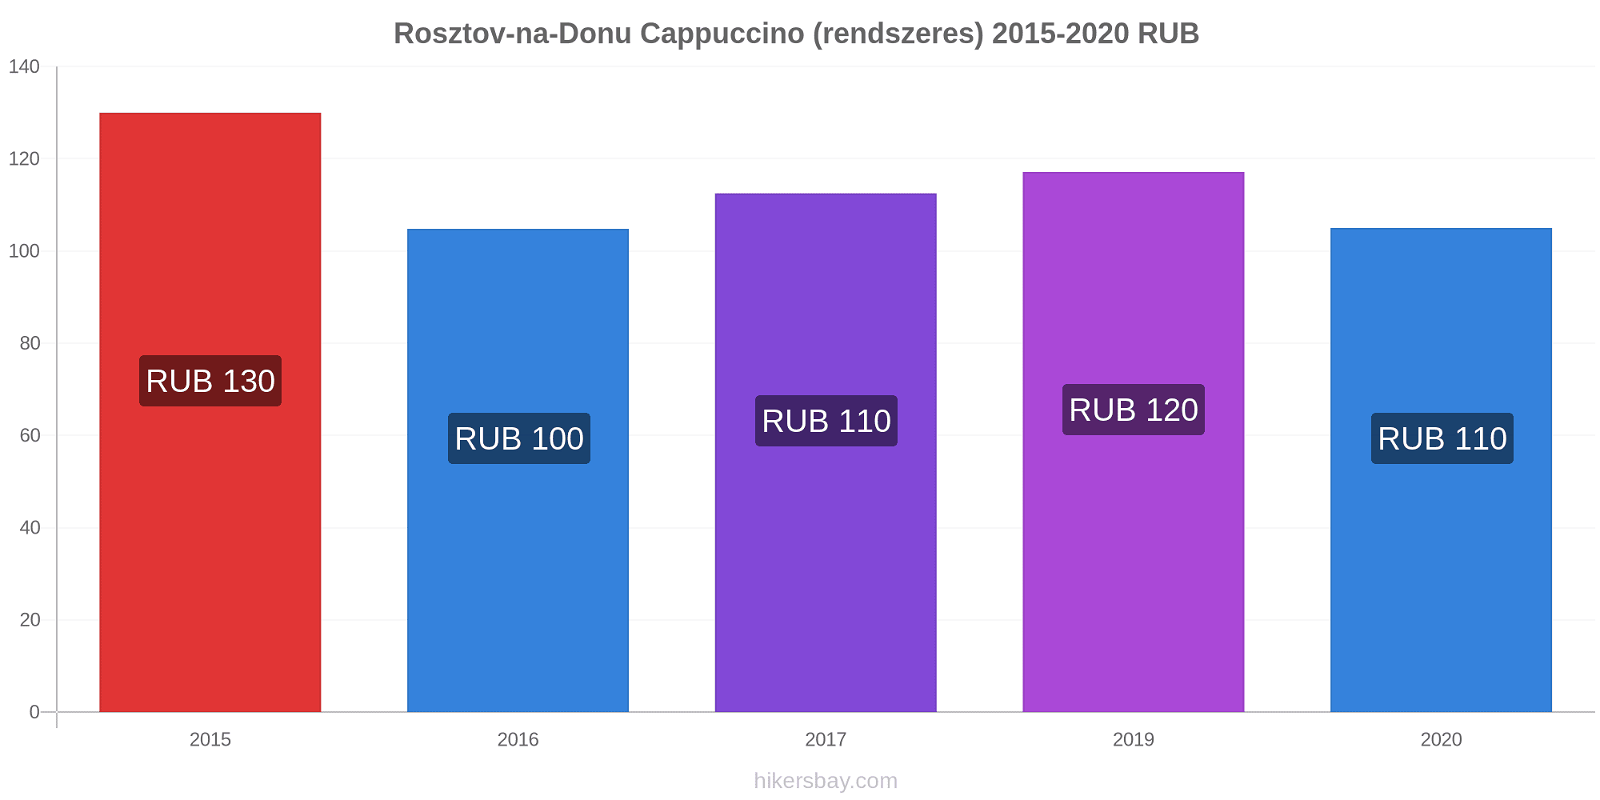 Rosztov-na-Donu árváltozások Cappuccino (rendszeres) hikersbay.com